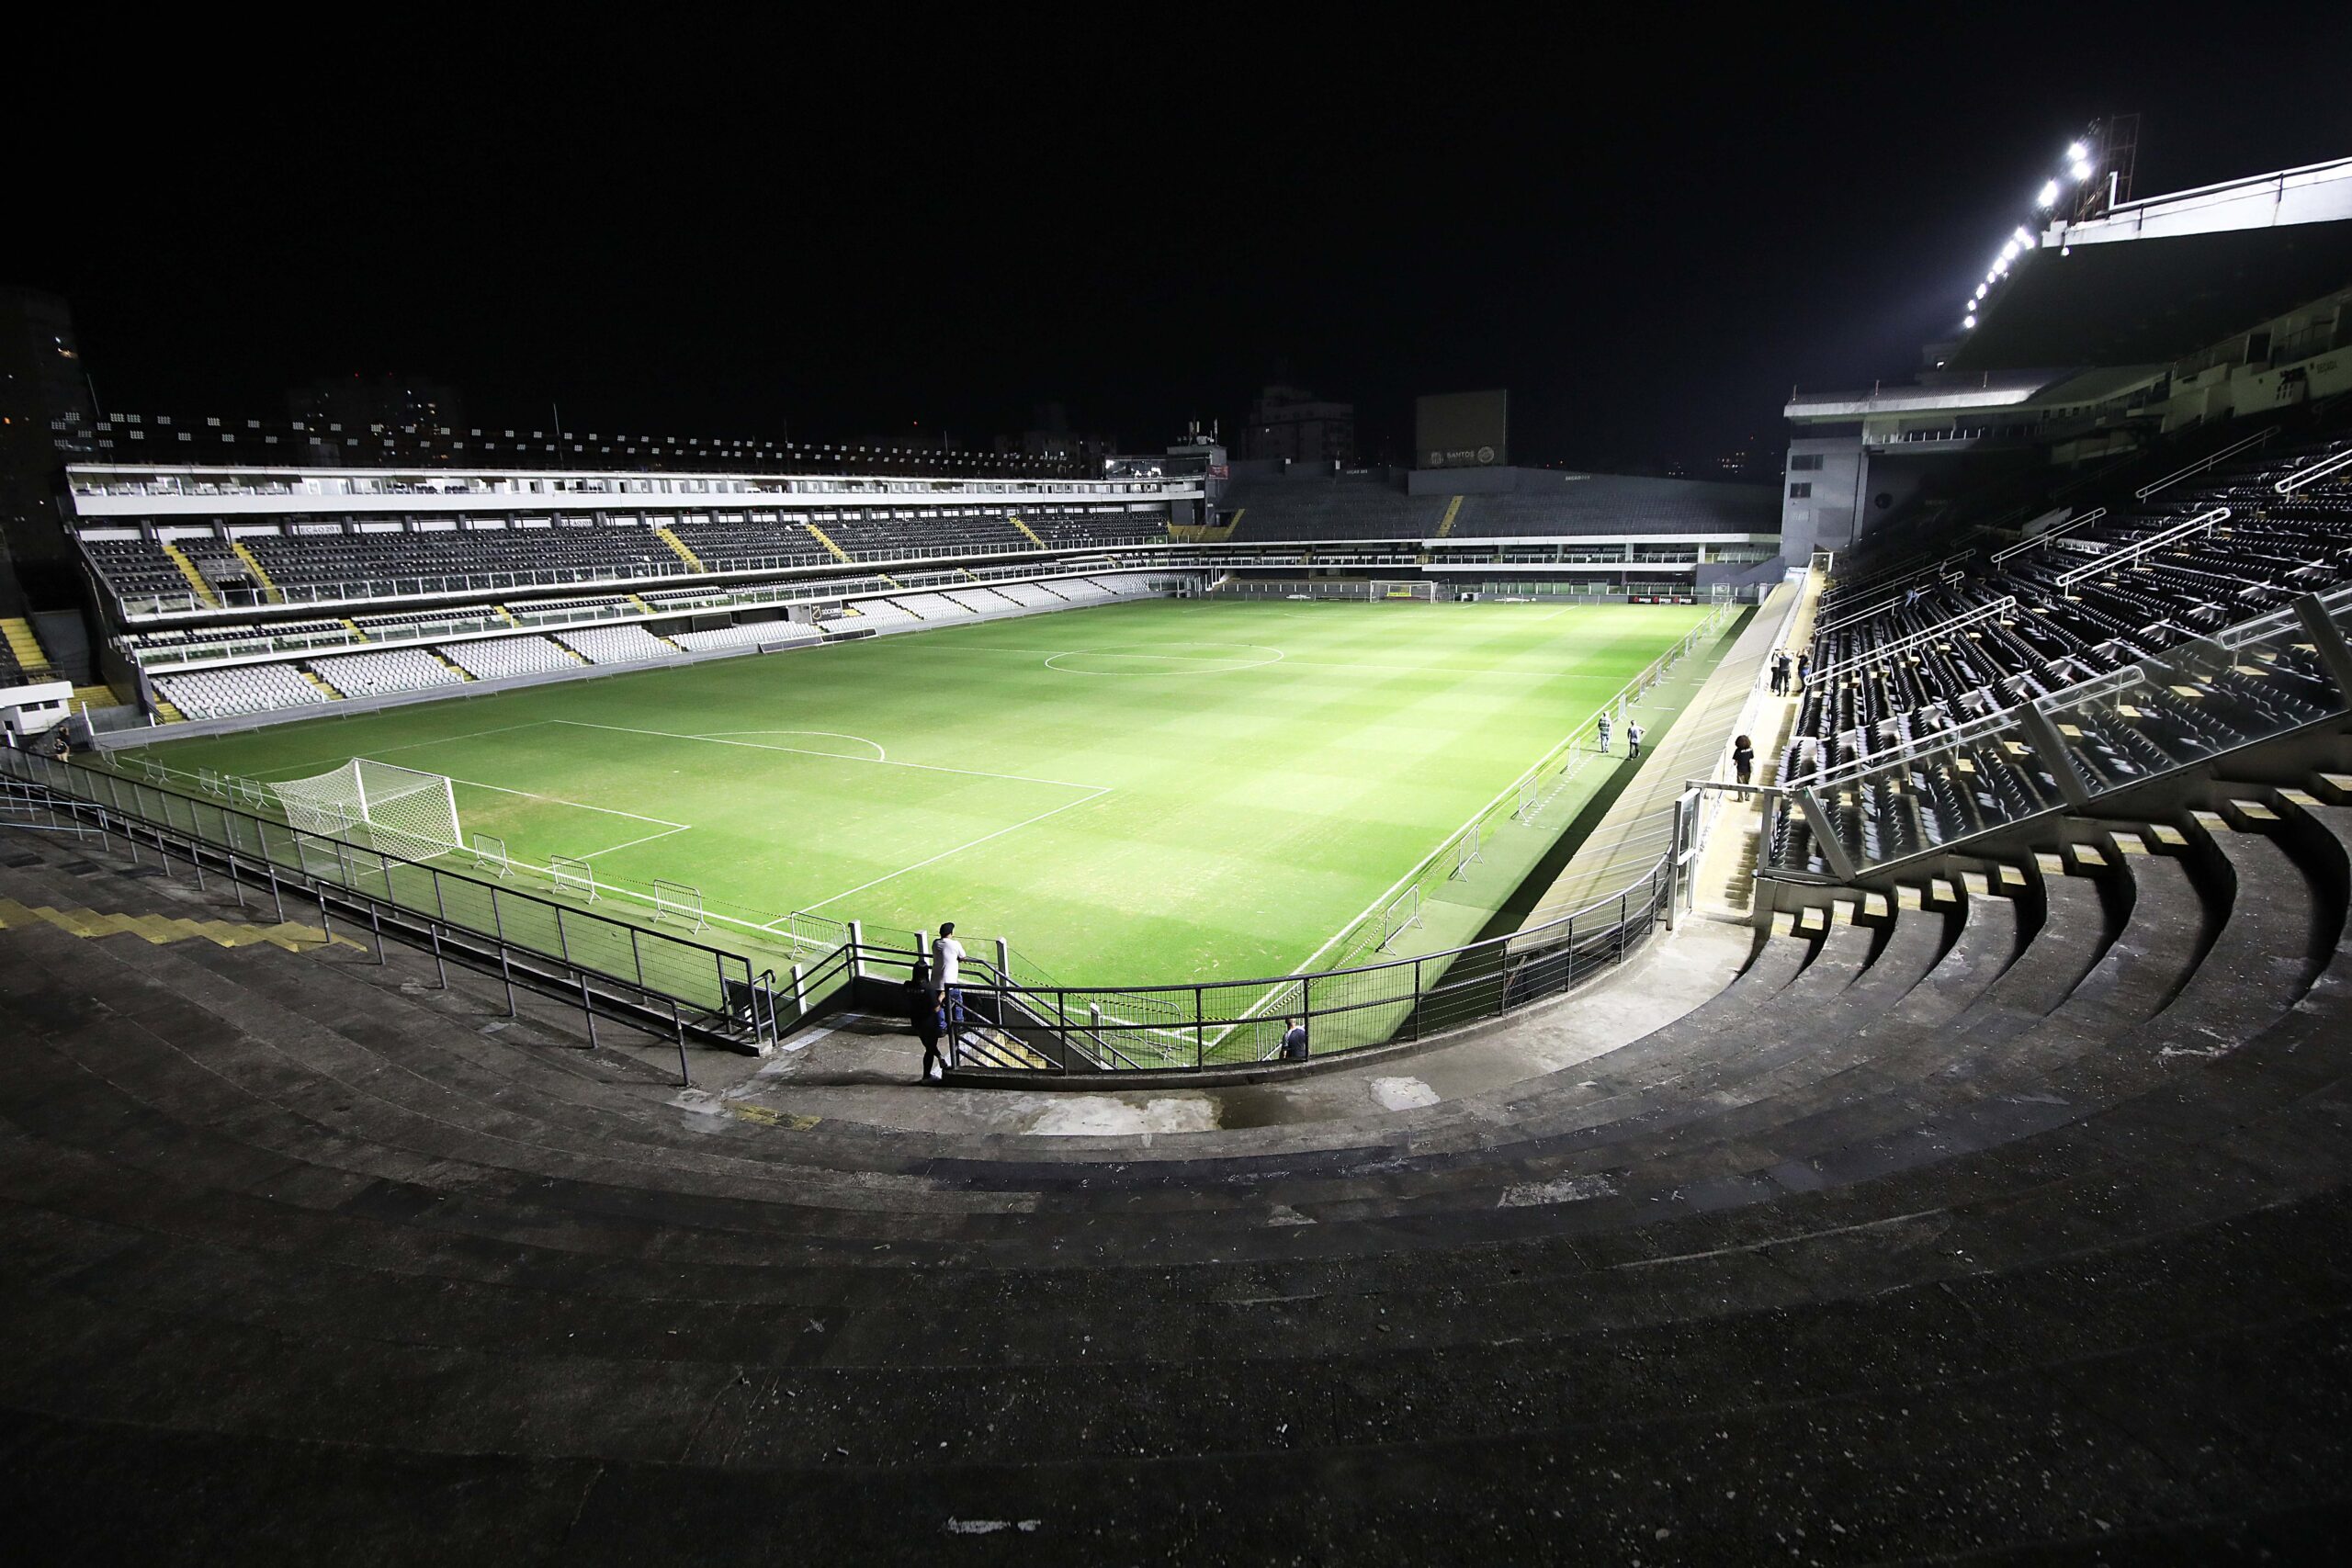 Arena Jogue Fácil Esports vs Corinthians Esports on 2023-11-01 on